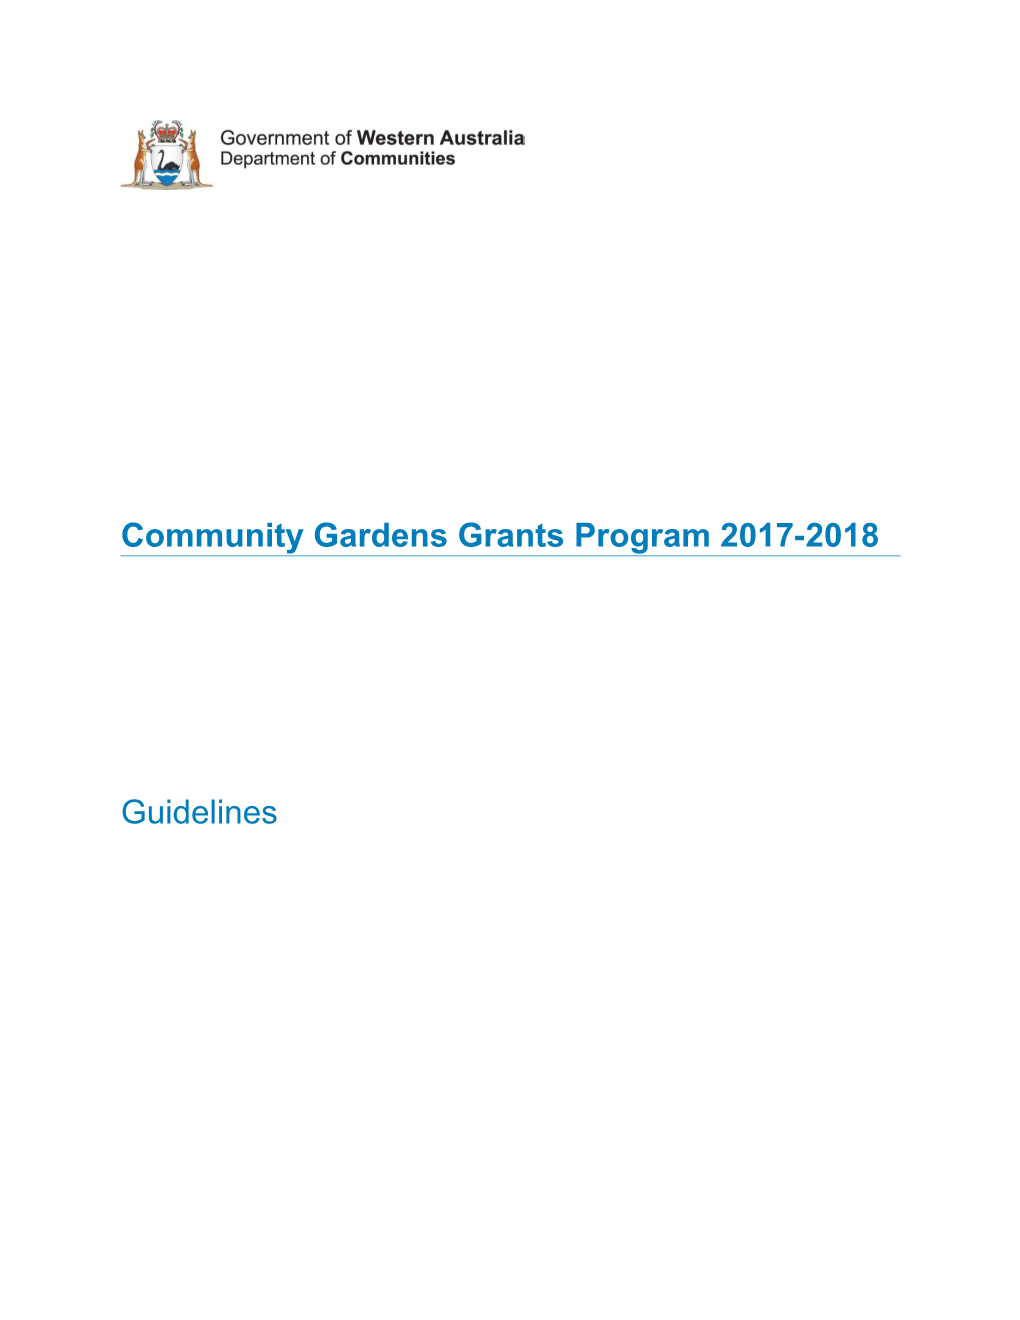 Community Gardens Grants Program - Guidelines